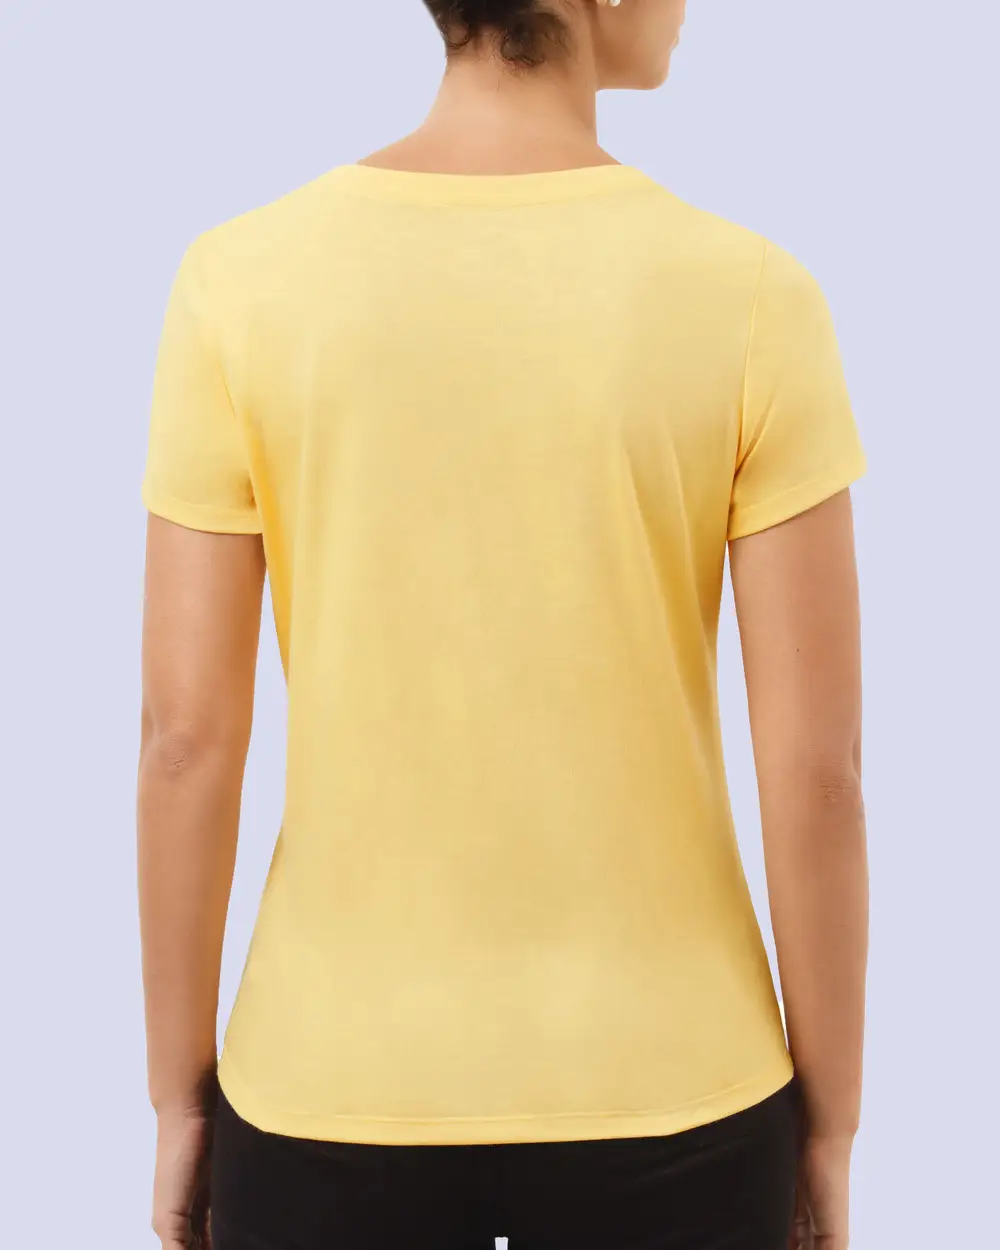 Camiseta dama cuello v color amarillo